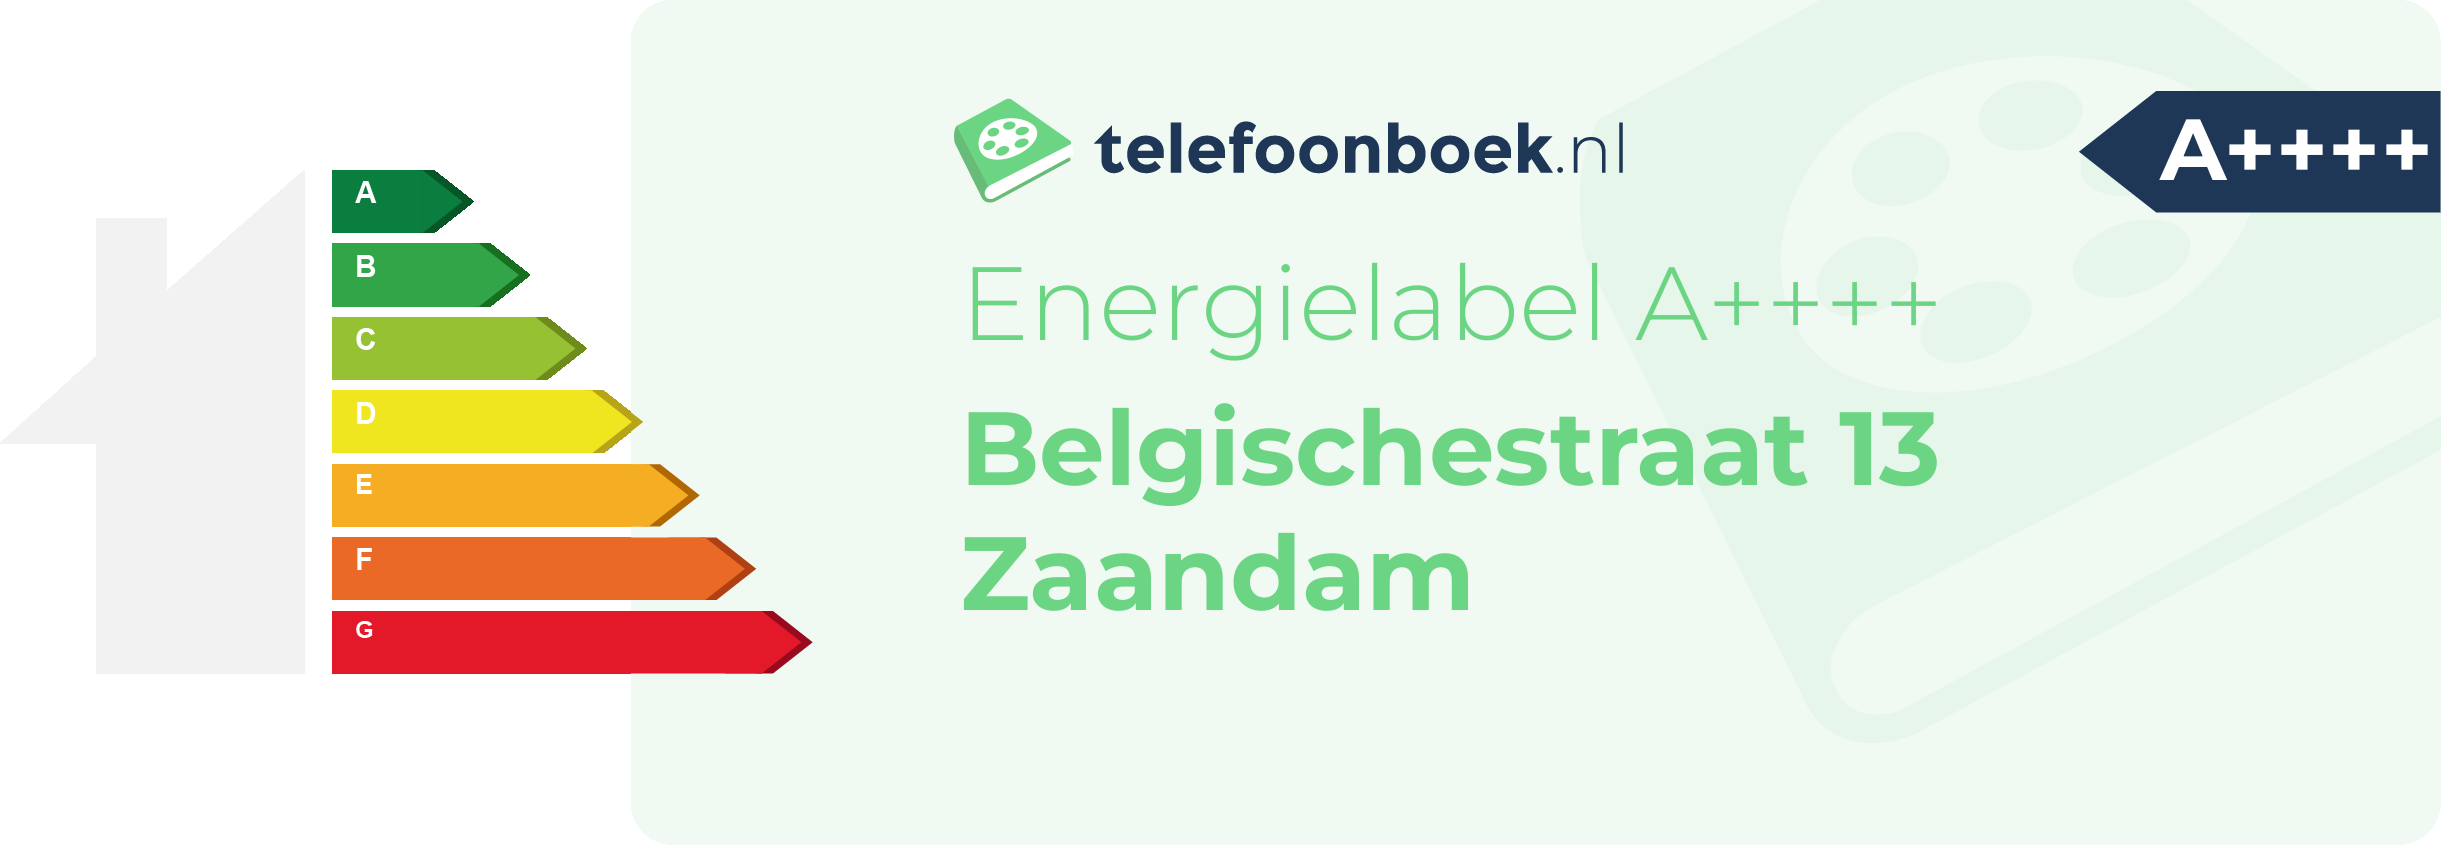 Energielabel Belgischestraat 13 Zaandam